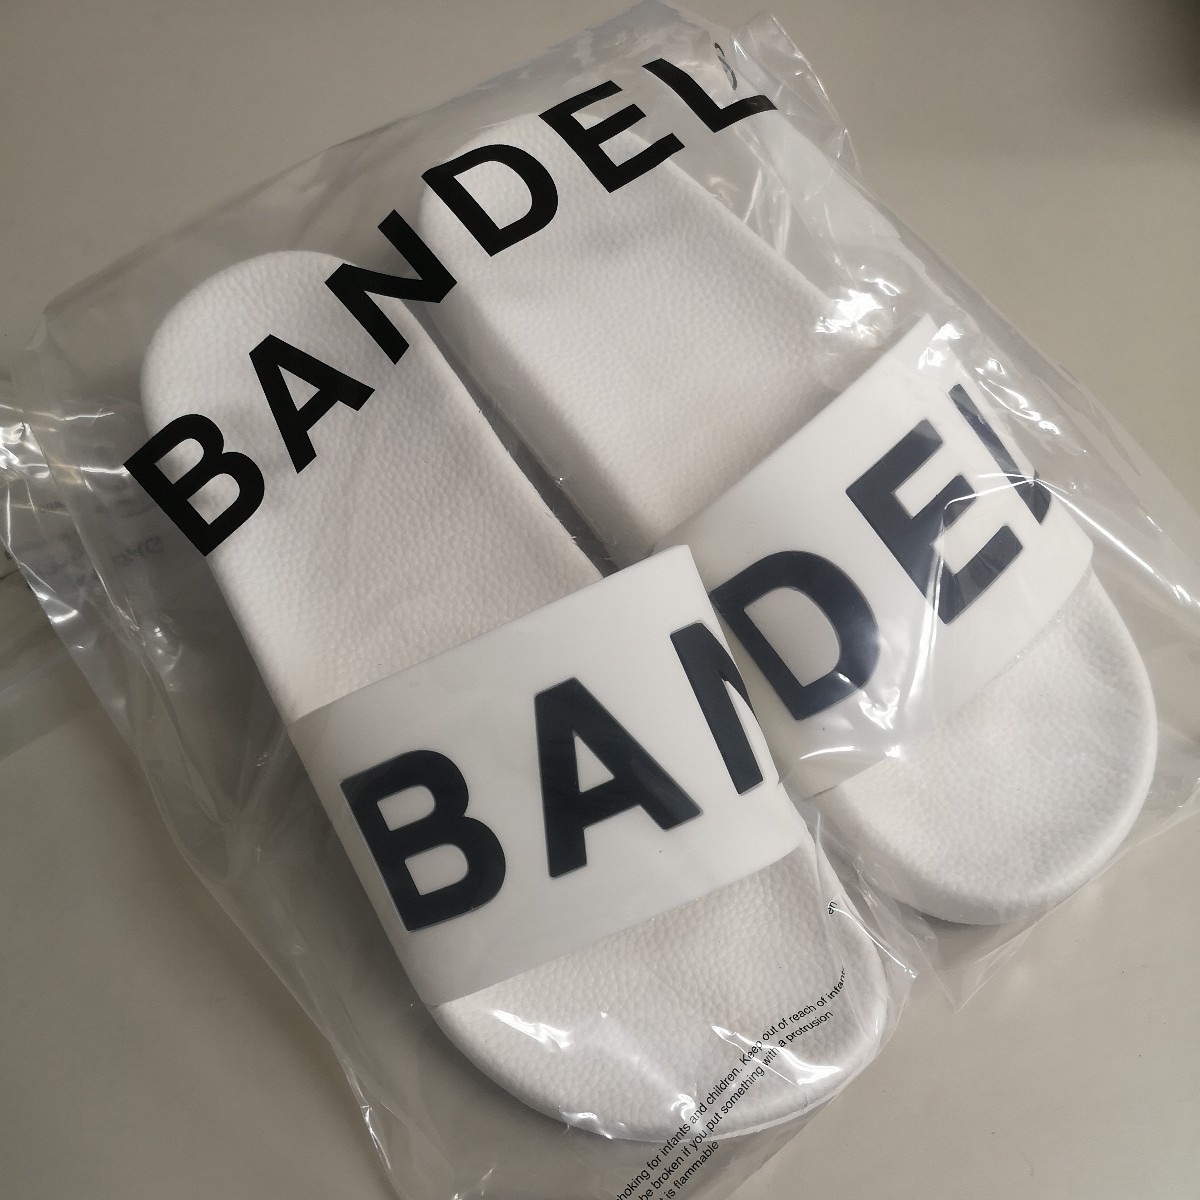 バンデル BANDEL/Lサイズ 27cm(42)/サンダル スライダー スリッパ/sandle slider/ビッグロゴ/白 ホワイト×ブラックの画像1